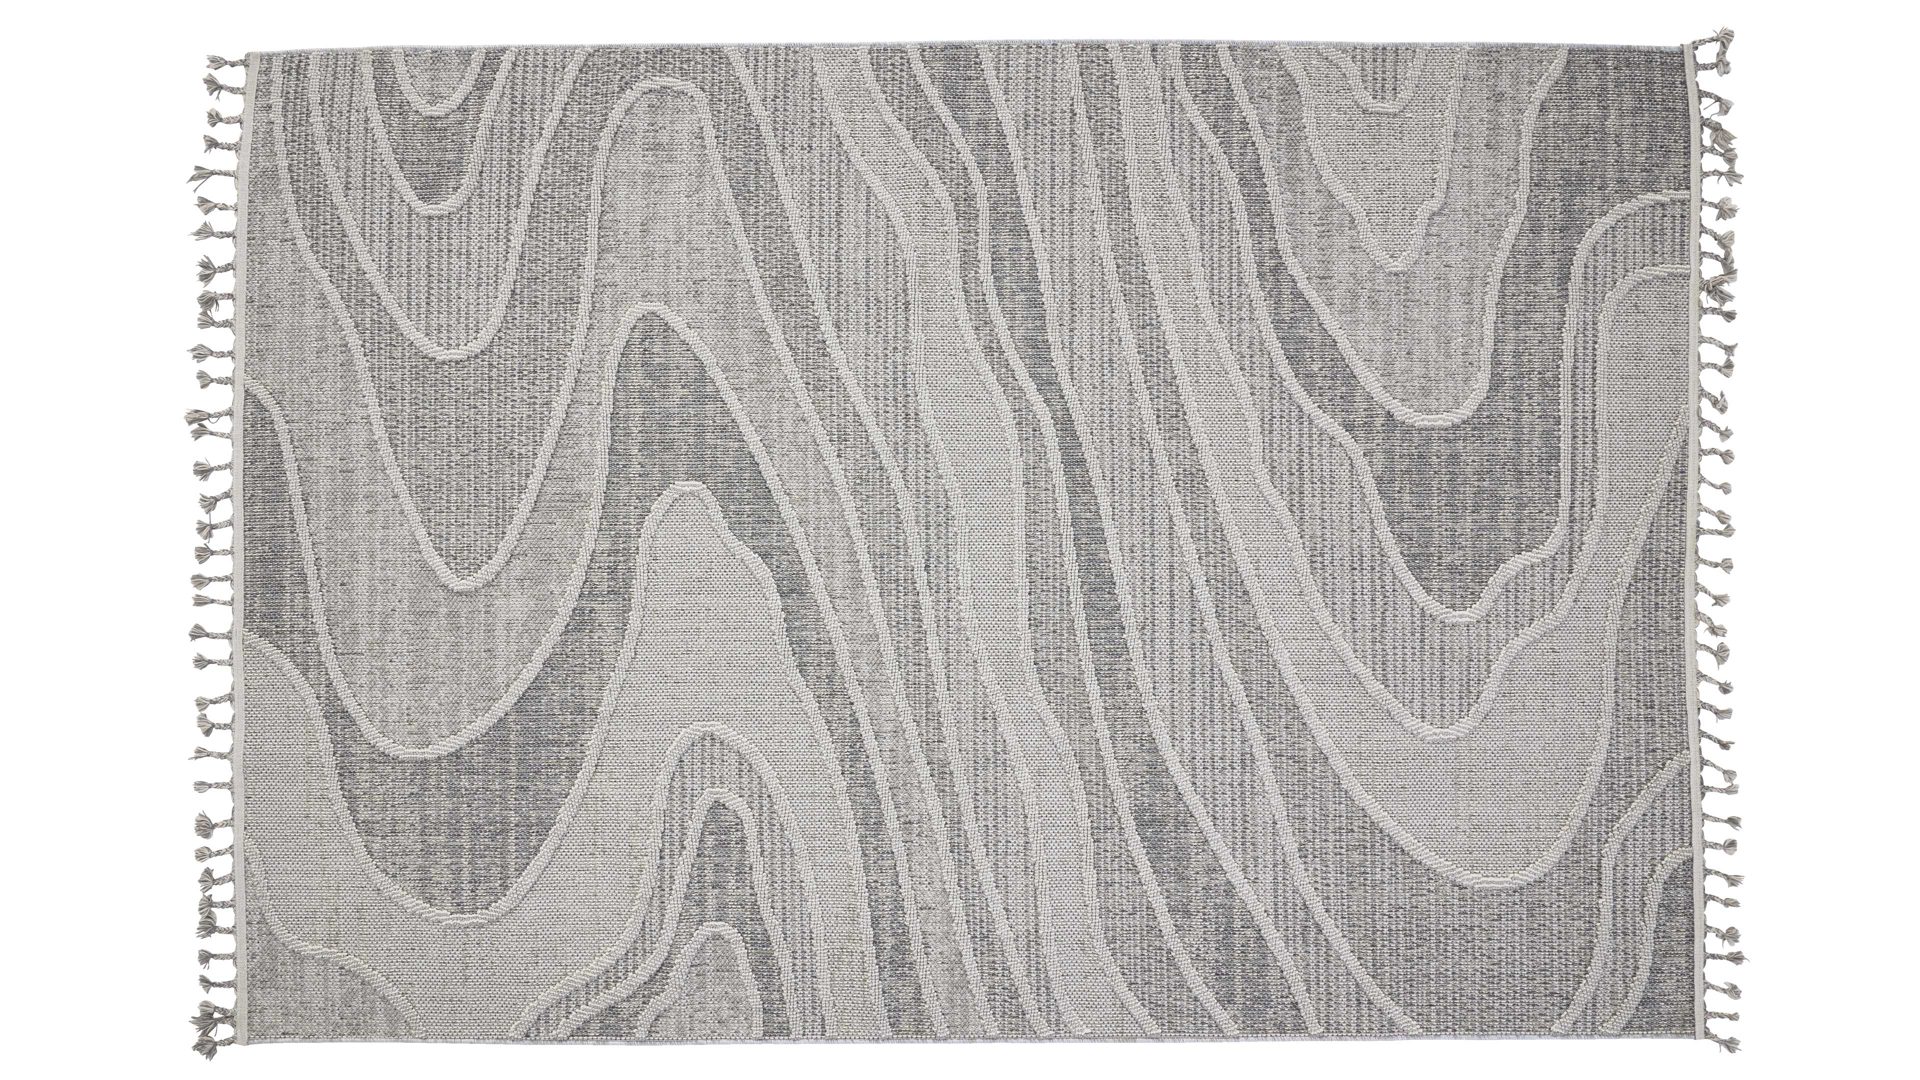 Outdoor-Teppich Interliving aus Kunstfaser in Grau Interliving Teppich Serie G-8020 - Outdoor-Teppich graues Linienmuster - ca. 160 x 230 cm